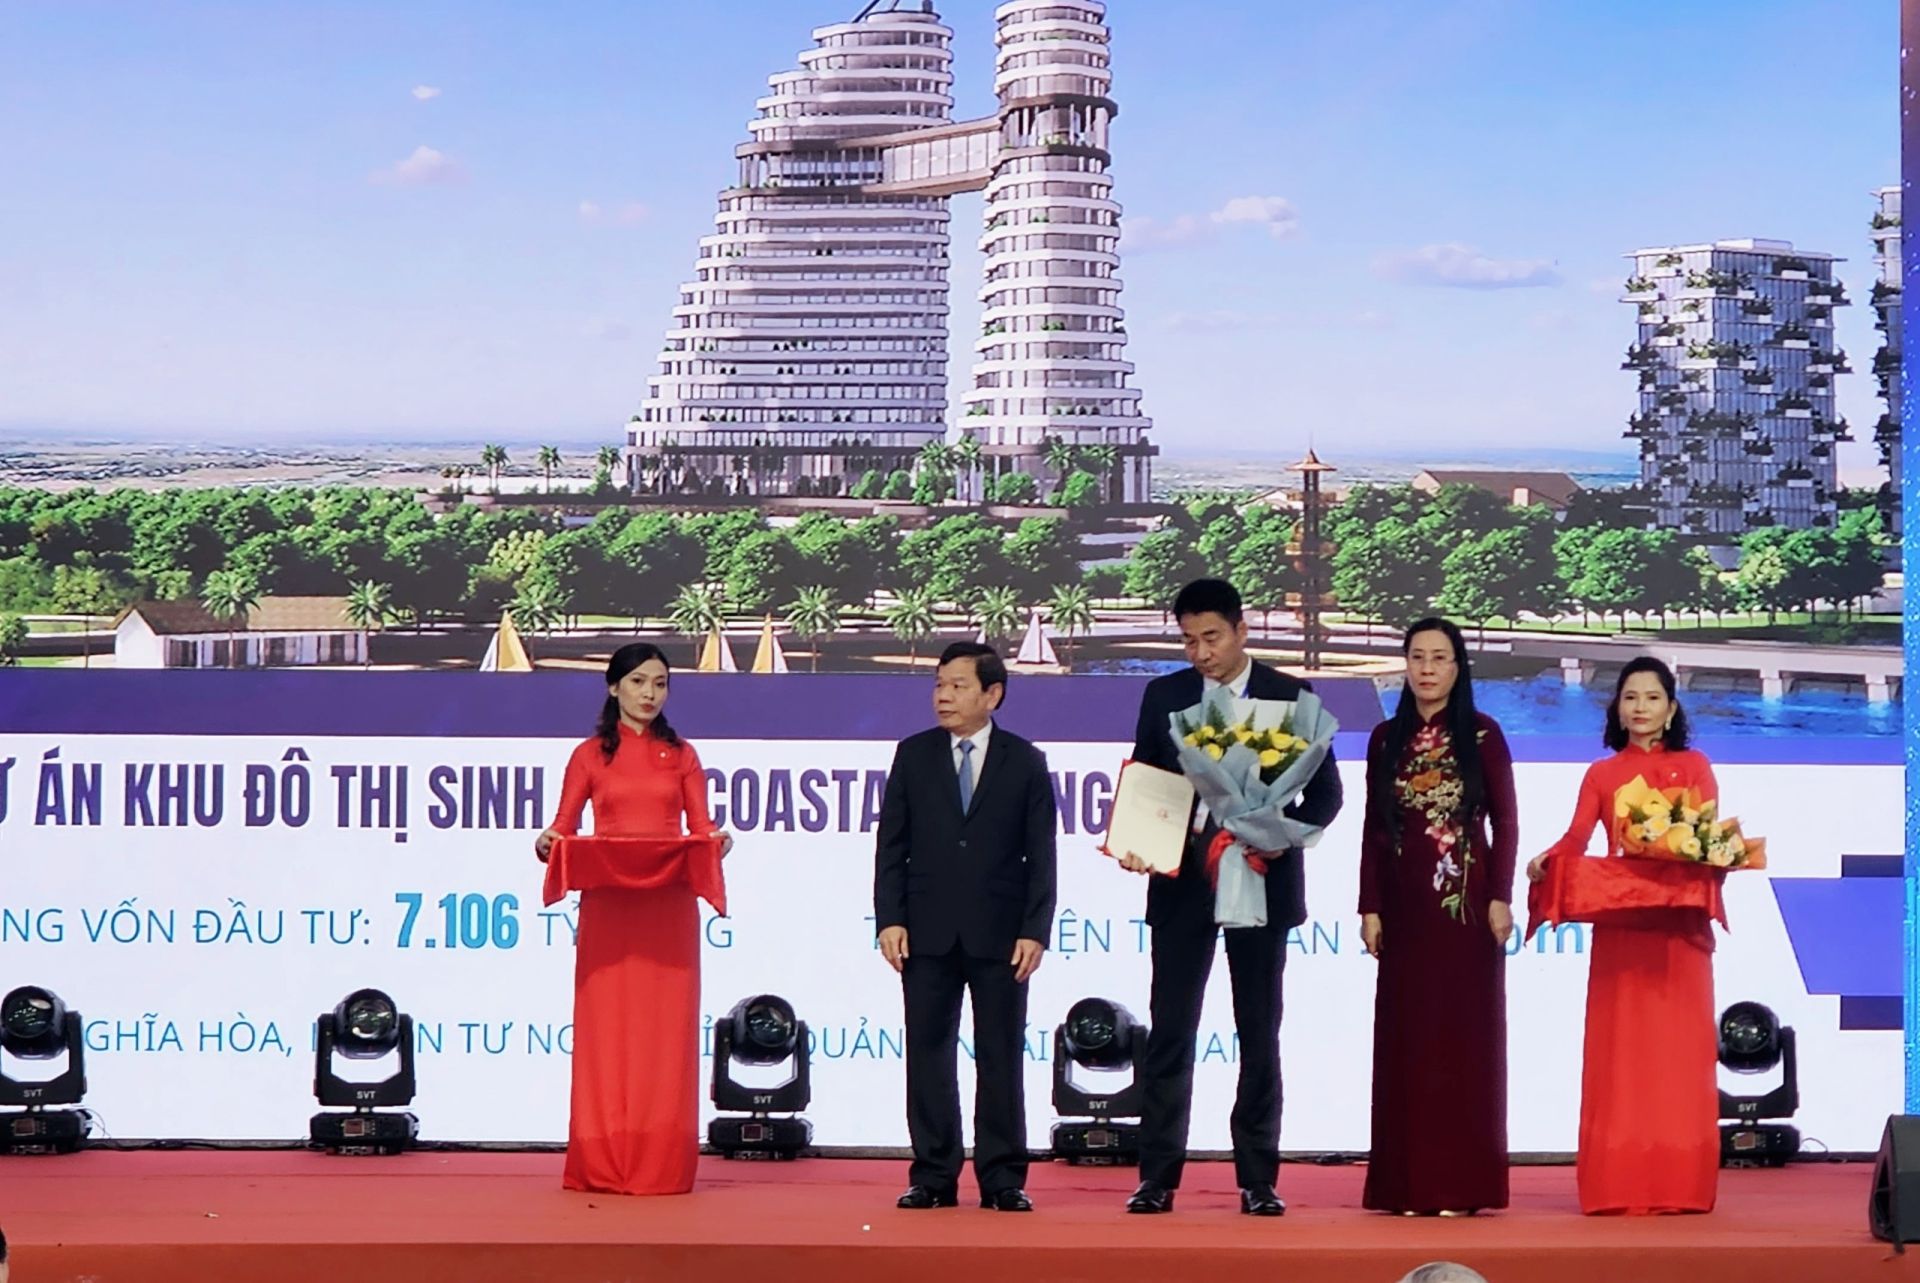 lãnh đạo tỉnh Quảng Ngãi đã trao Quyết định chấp thuận nhà đầu tư thực hiện đối với 3 Dự án Khu đô thị Bàu Giang với tổng vốn đầu tư hơn 7 nghìn tỷ đồng